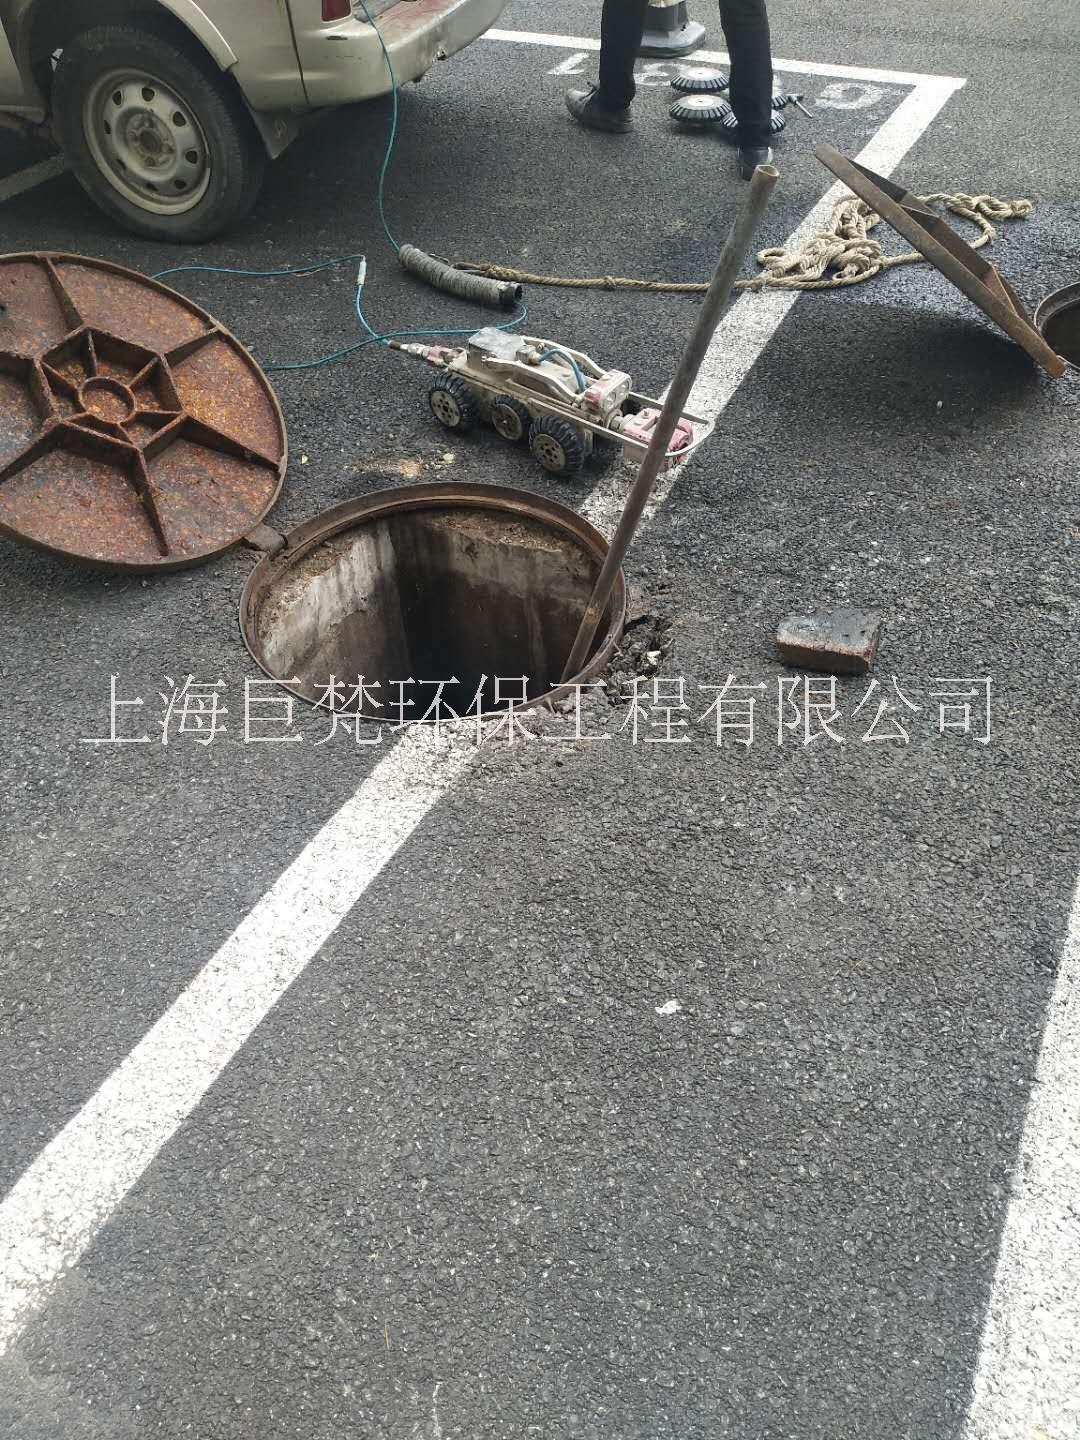 上海青浦雨污管道cctv检测 上海青浦下水管道影像检测 上海管道机器人检测